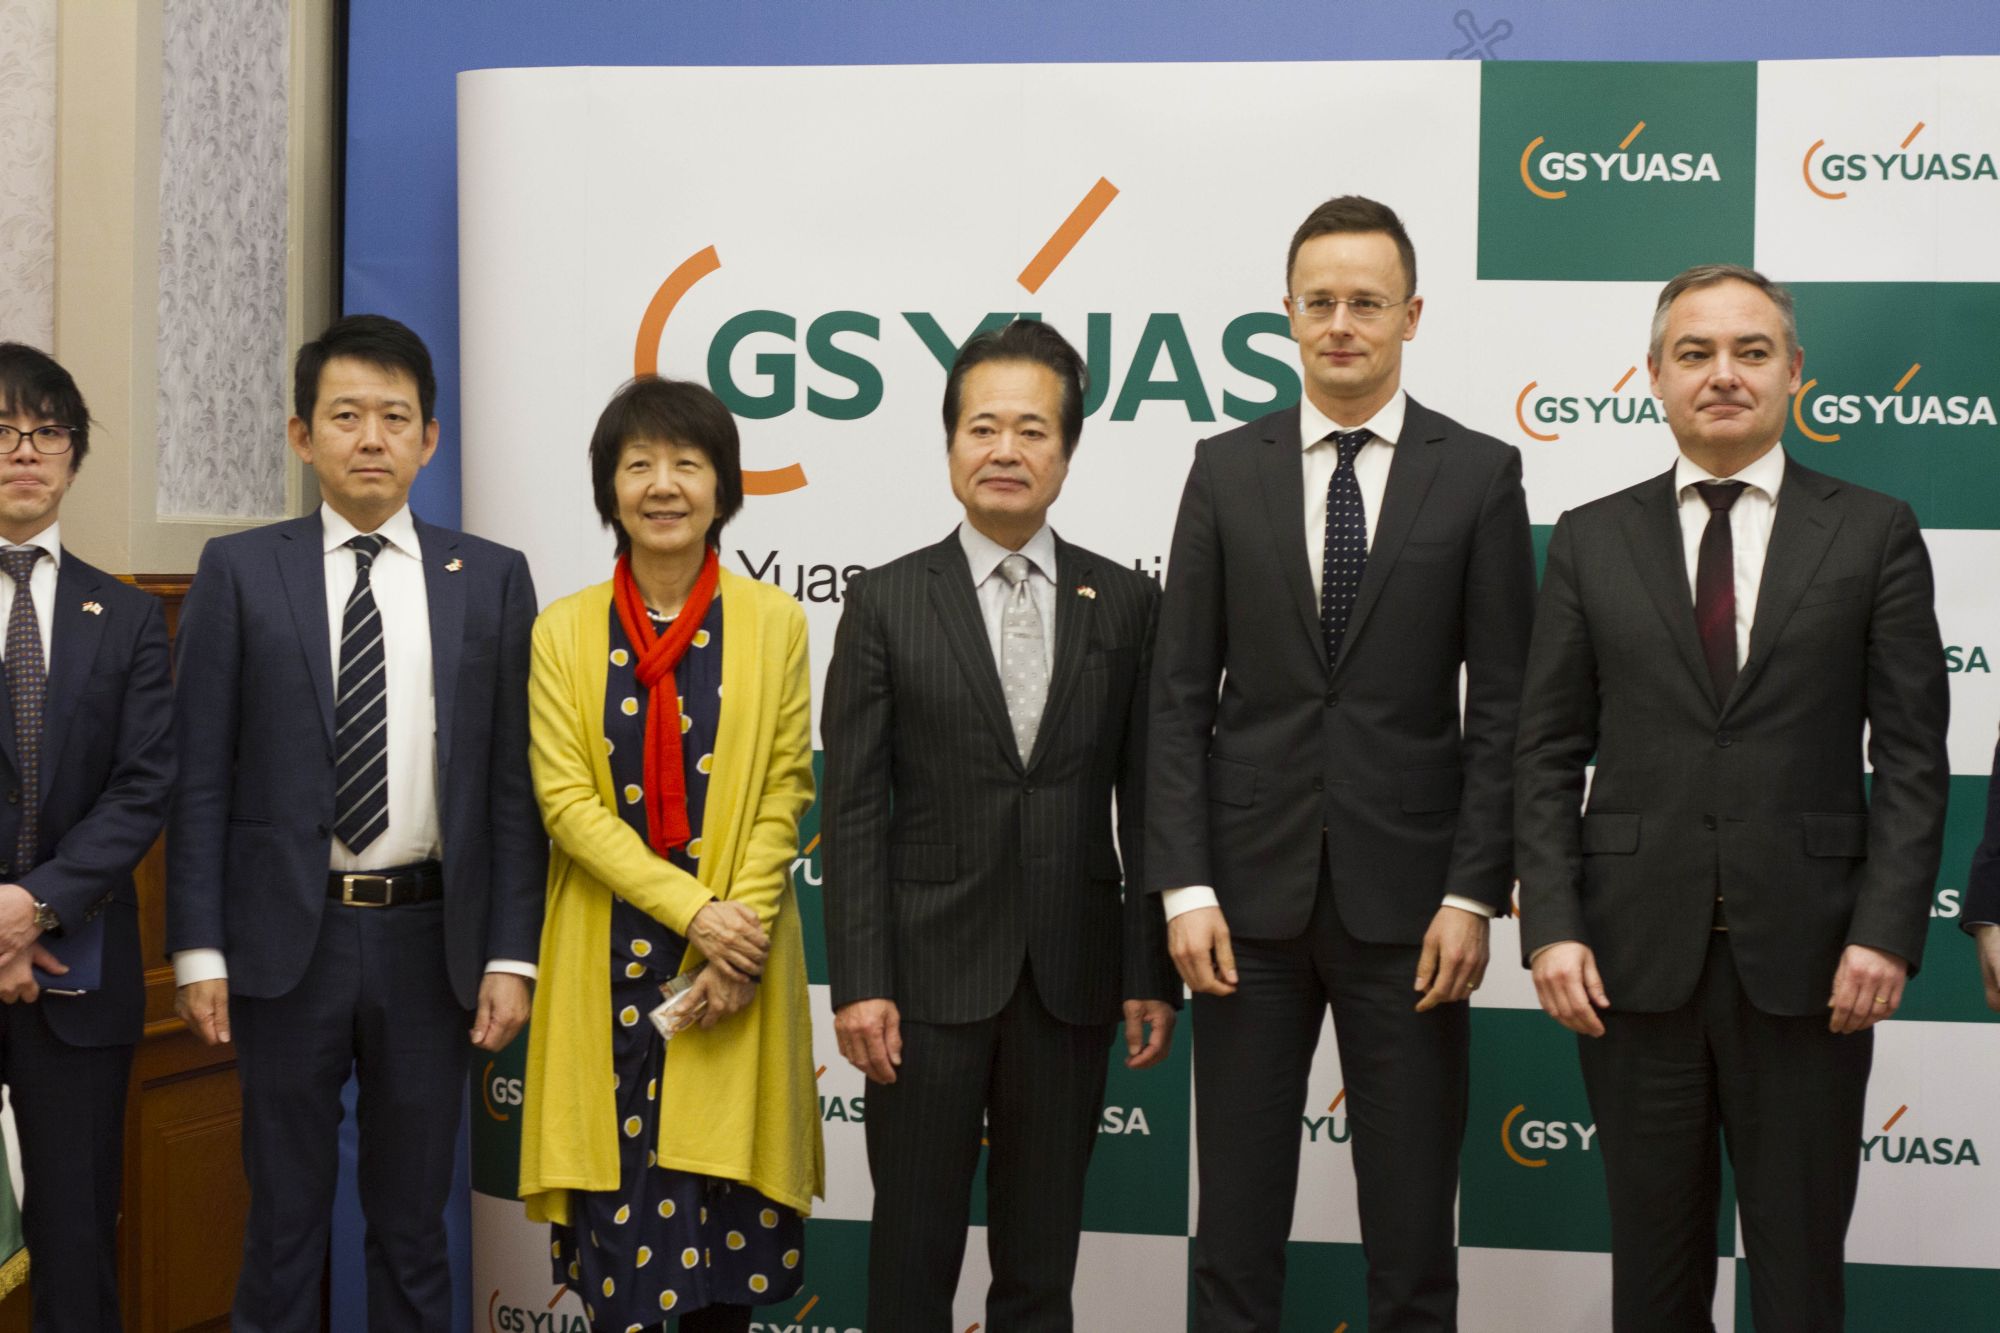 Makoto Yoda, a GS Yuasa Corporation vezető tanácsadója és Szijjártó Péter külgazdasági és külügyminiszter a GS Yuasa miskolci akkumulátor gyárának építését bejelentő sajtótájékoztatón, 2018. január 11-én (Fotó: KKM)